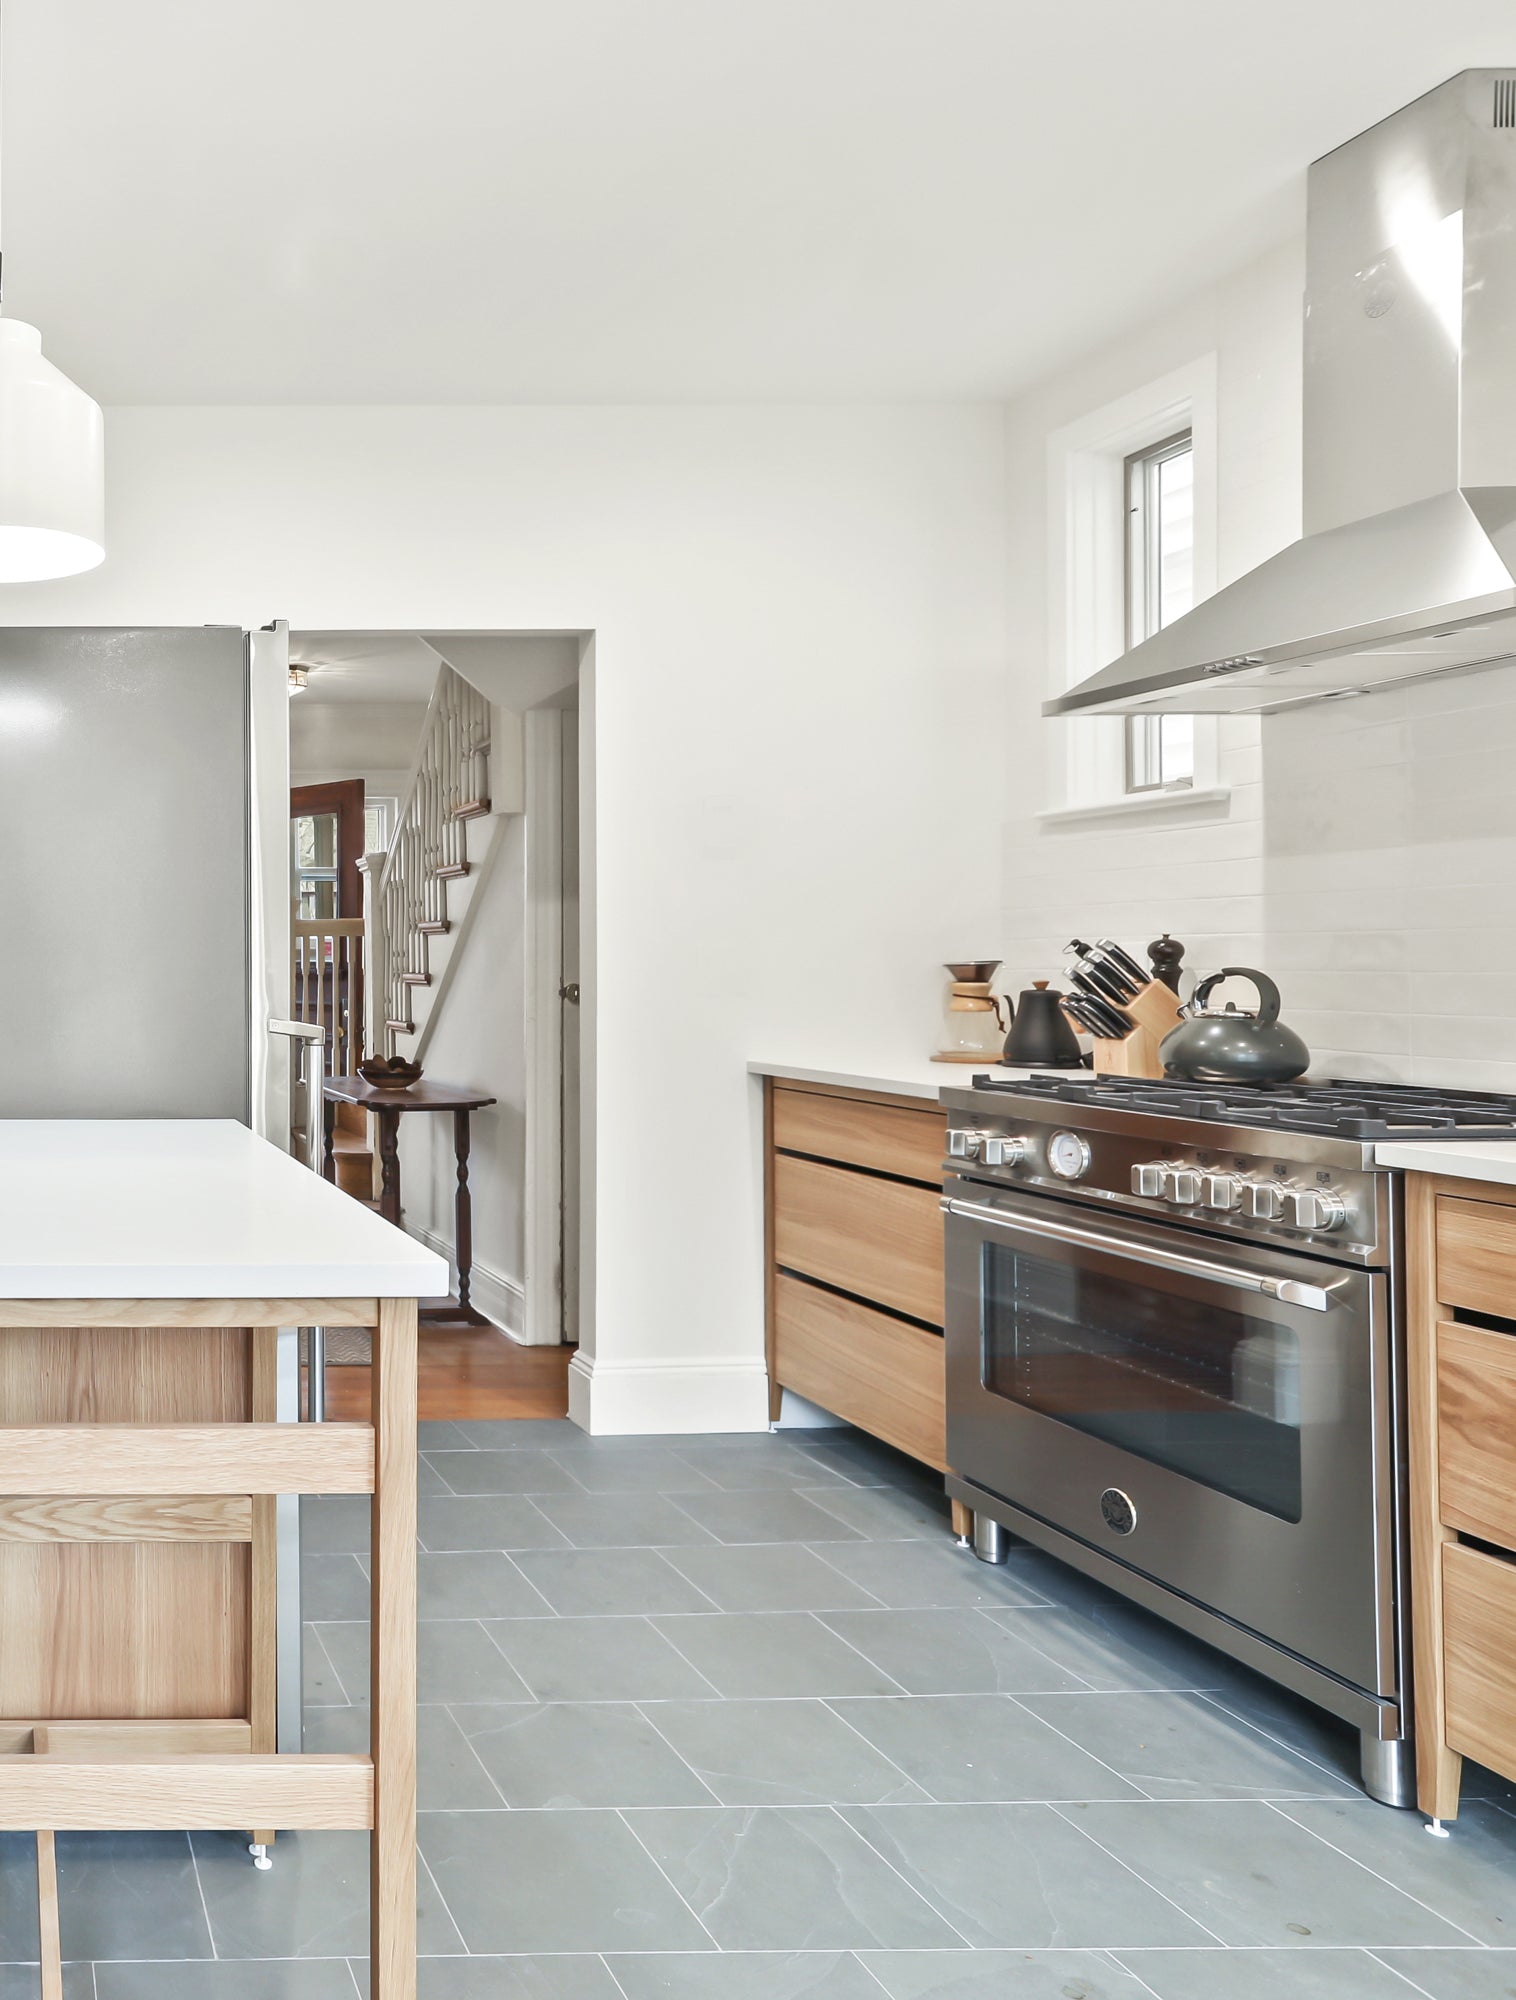 kitchen design, modular kitchen, freestanding kitchen, kitchen renovation, natural oak, kitchen ideas.